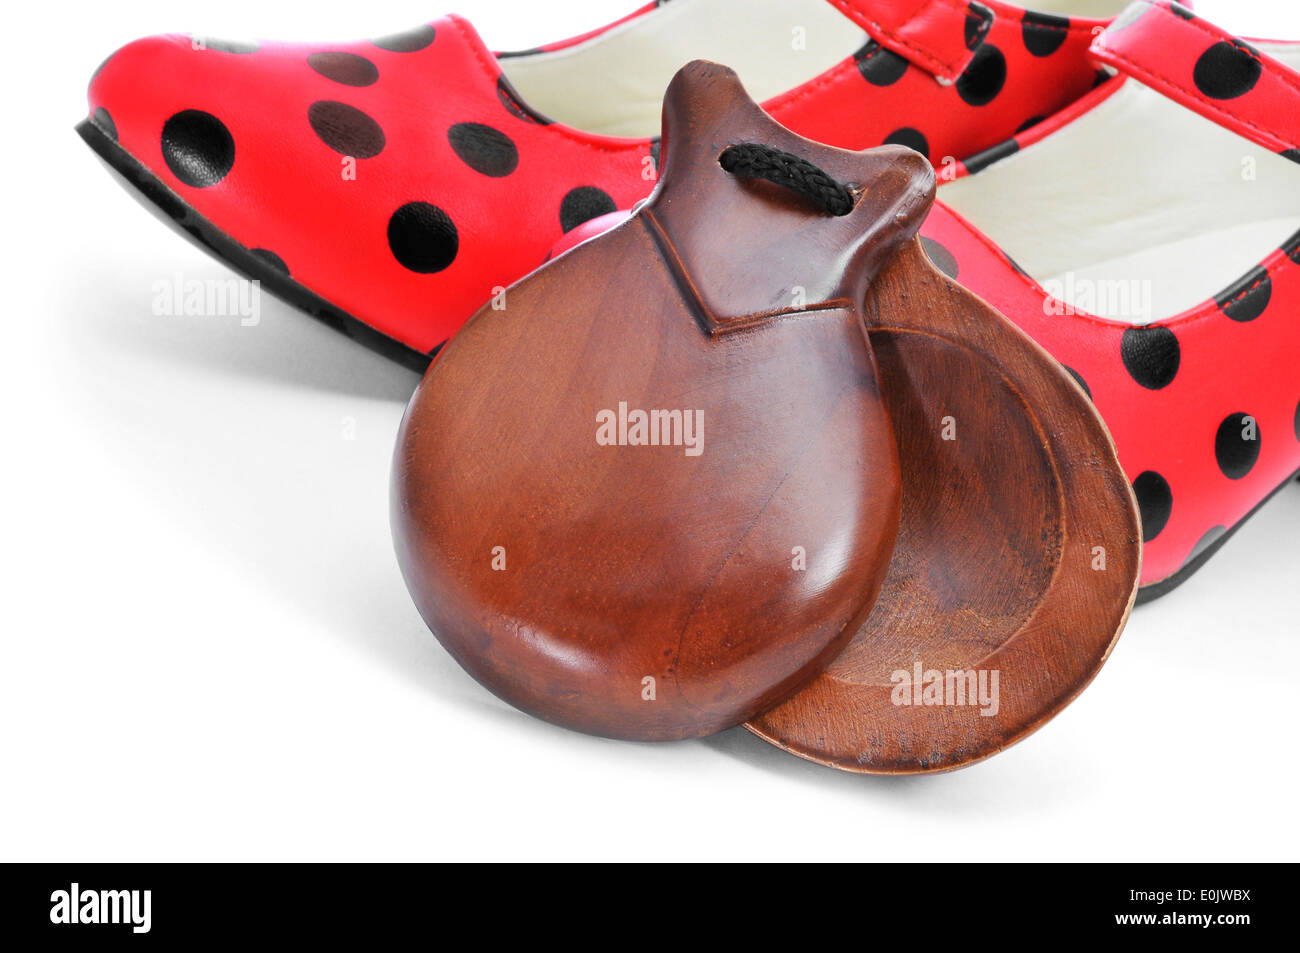 Castagnettes espagnoles typiques et dot-rouge à motifs chaussures flamenco, sur un fond blanc Banque D'Images